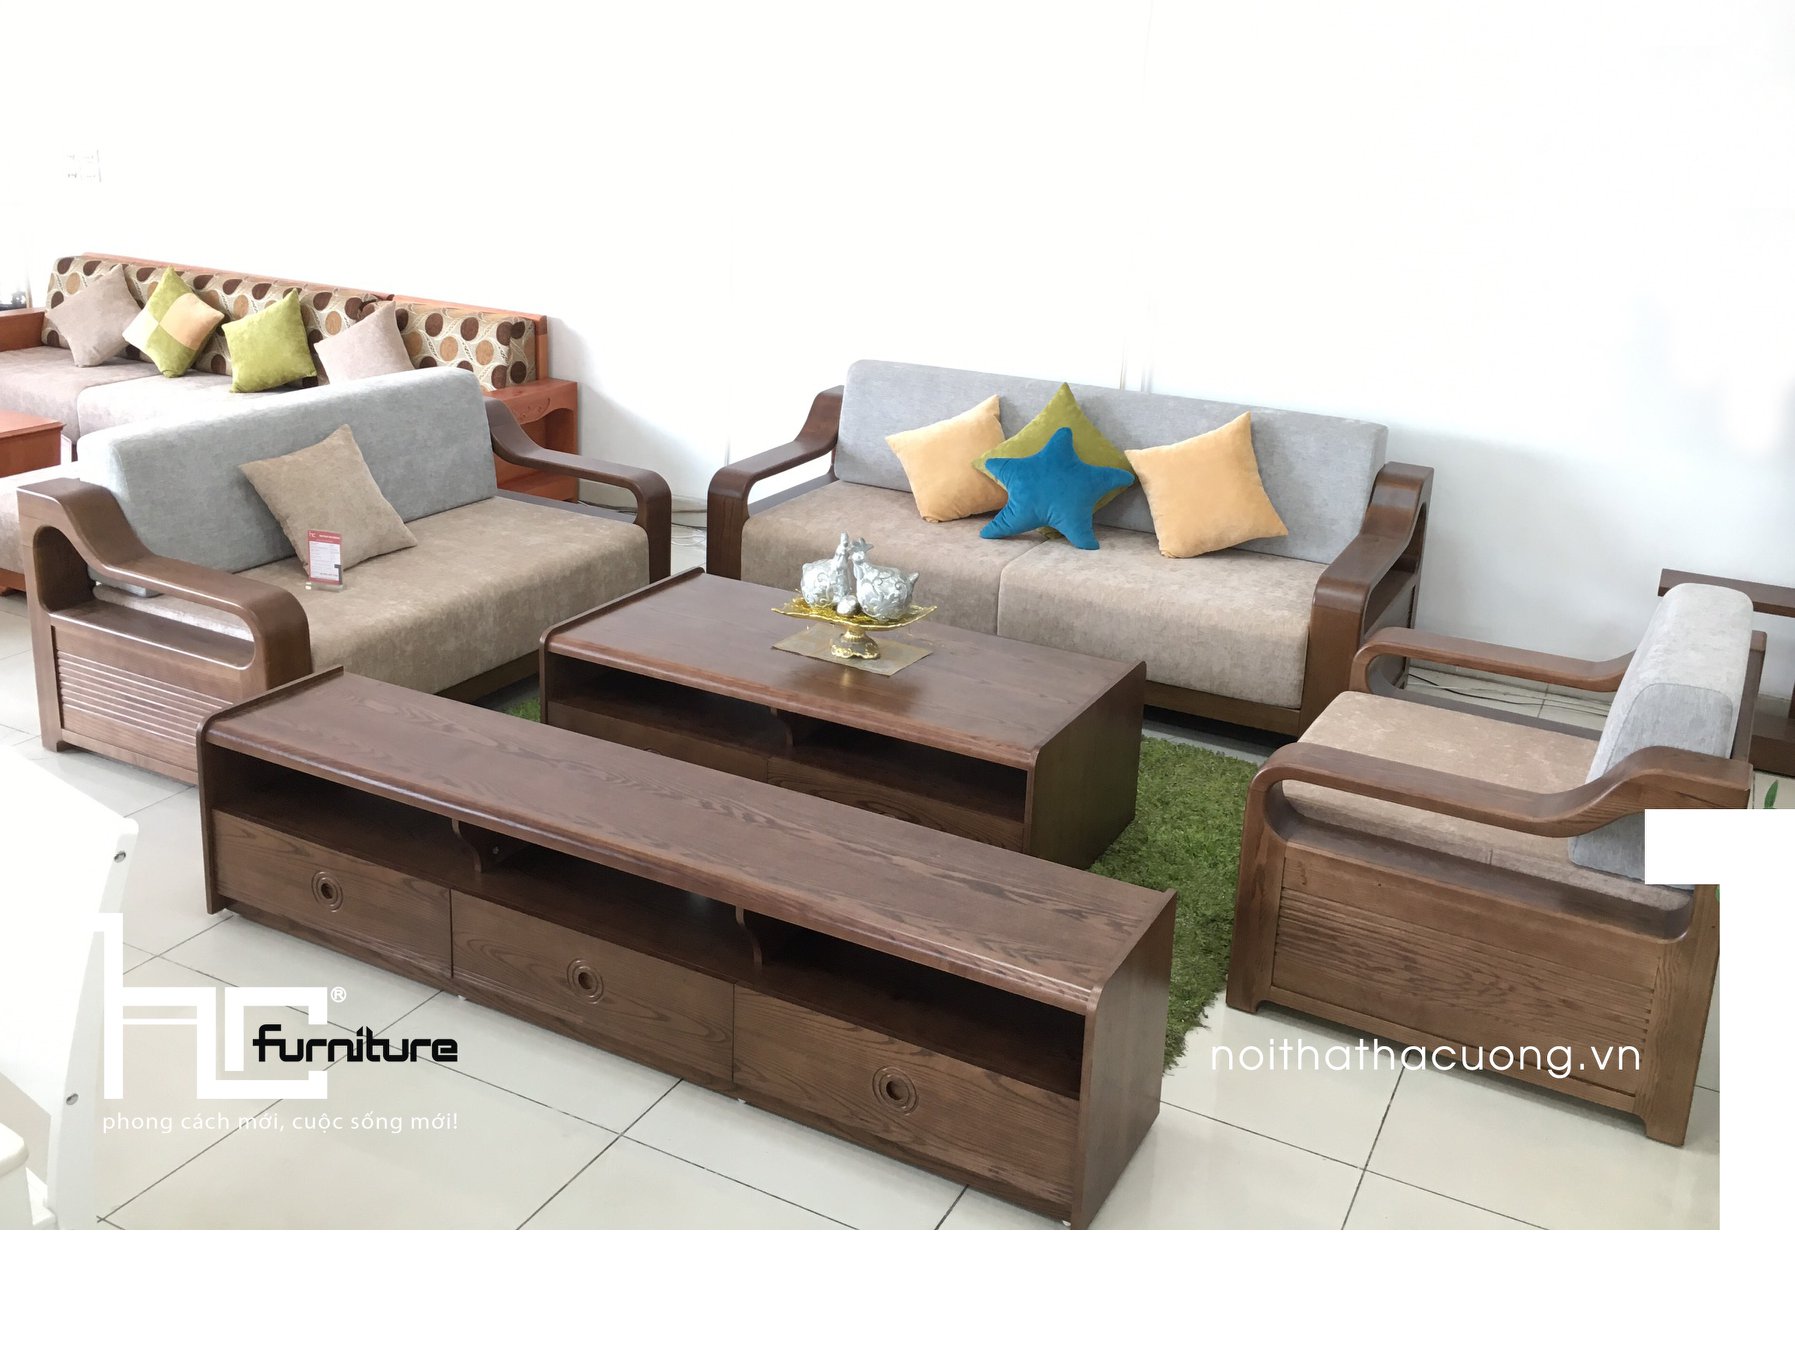 Sofa gỗ tự nhiên sản xuất bởi Hà Cường Furniture